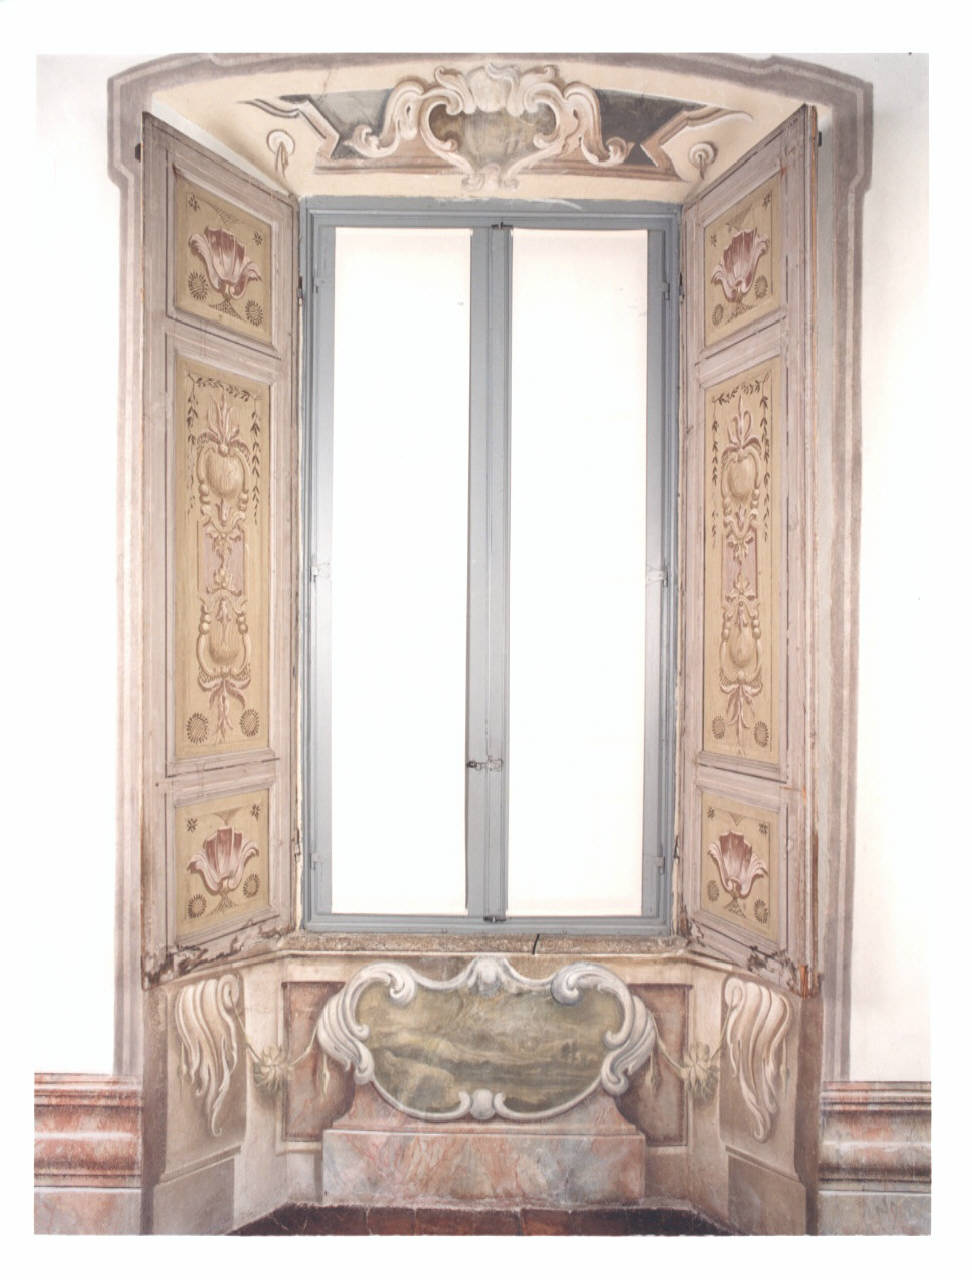 motivi decorativi architettonici (finestra strombata) - manifattura lombarda (seconda metà sec. XVIII)